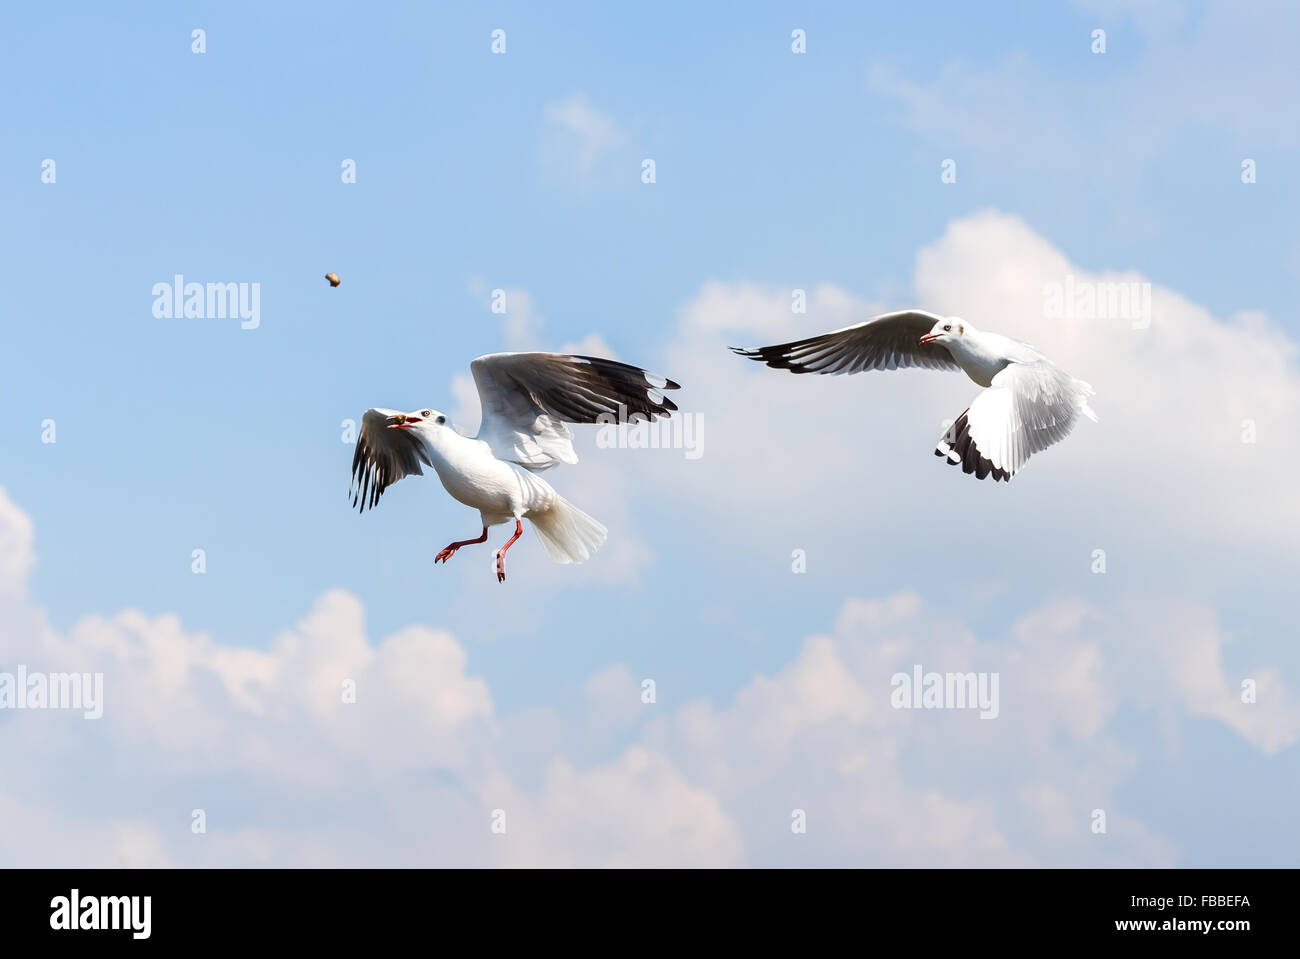 Dos gaviotas intenta conseguir comida en el aire el nublado cielo azul Foto de stock